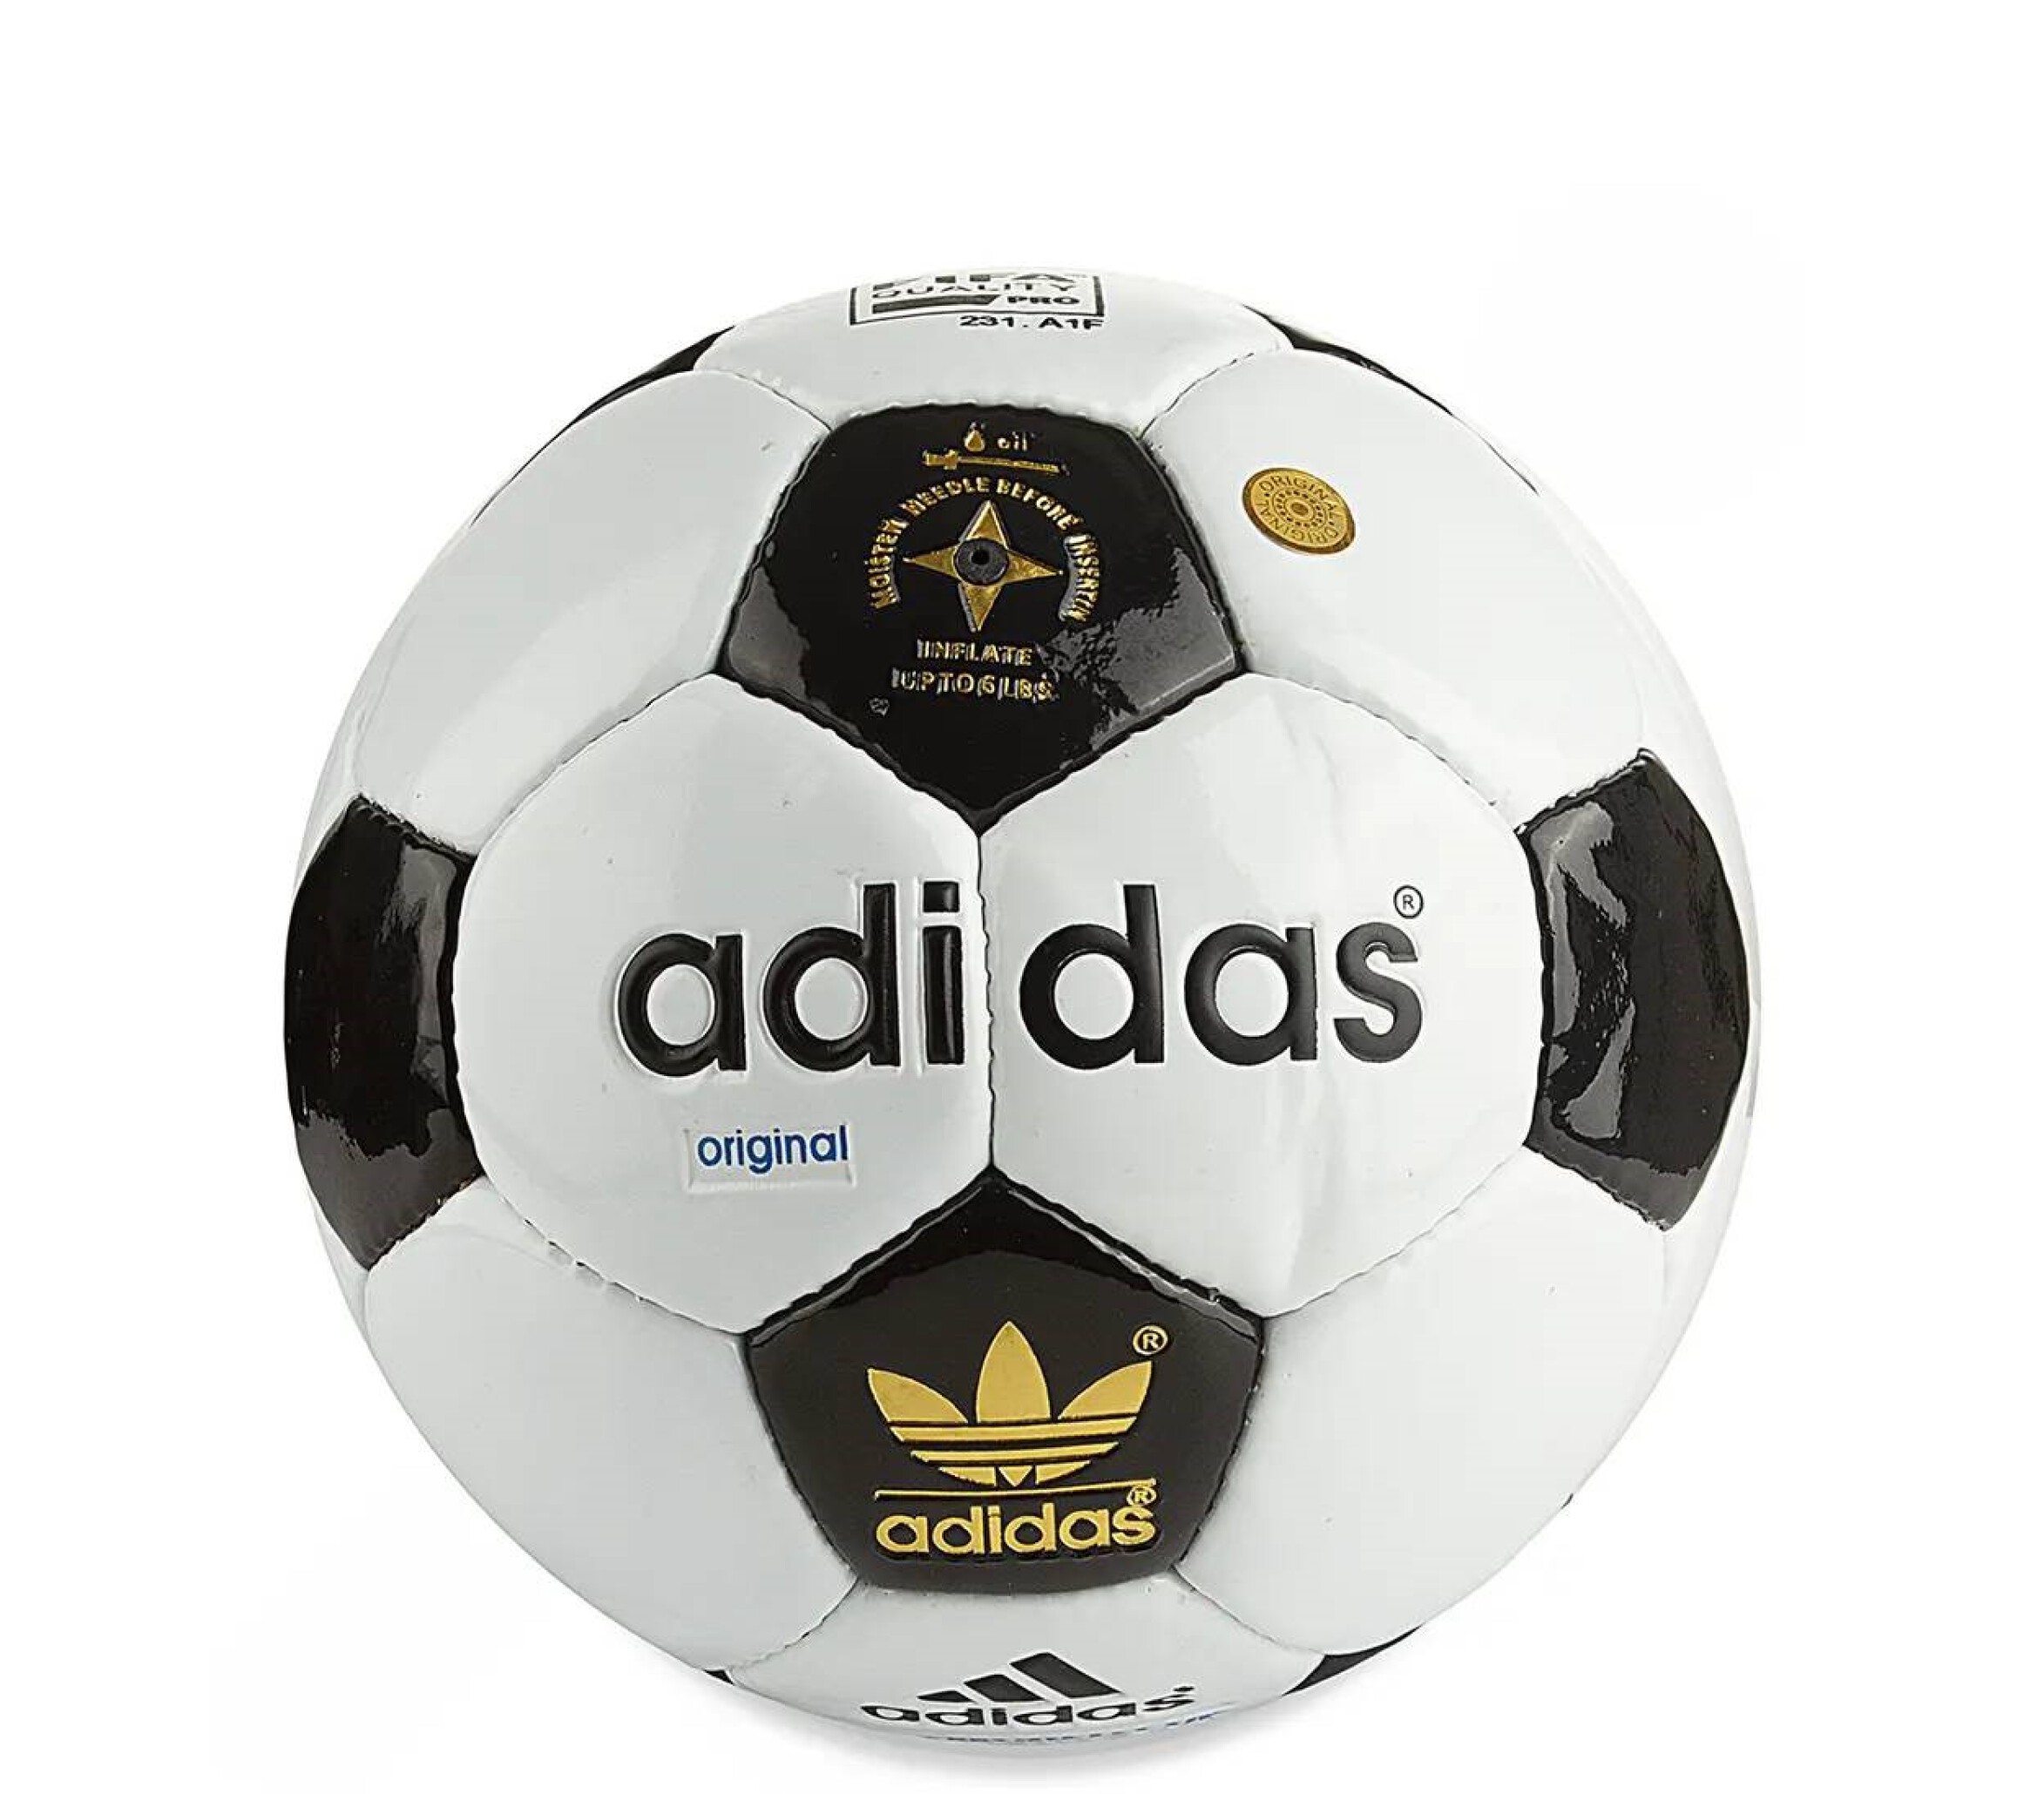  خرید توپ فوتبال طرح آدیداس دوختی قطر 